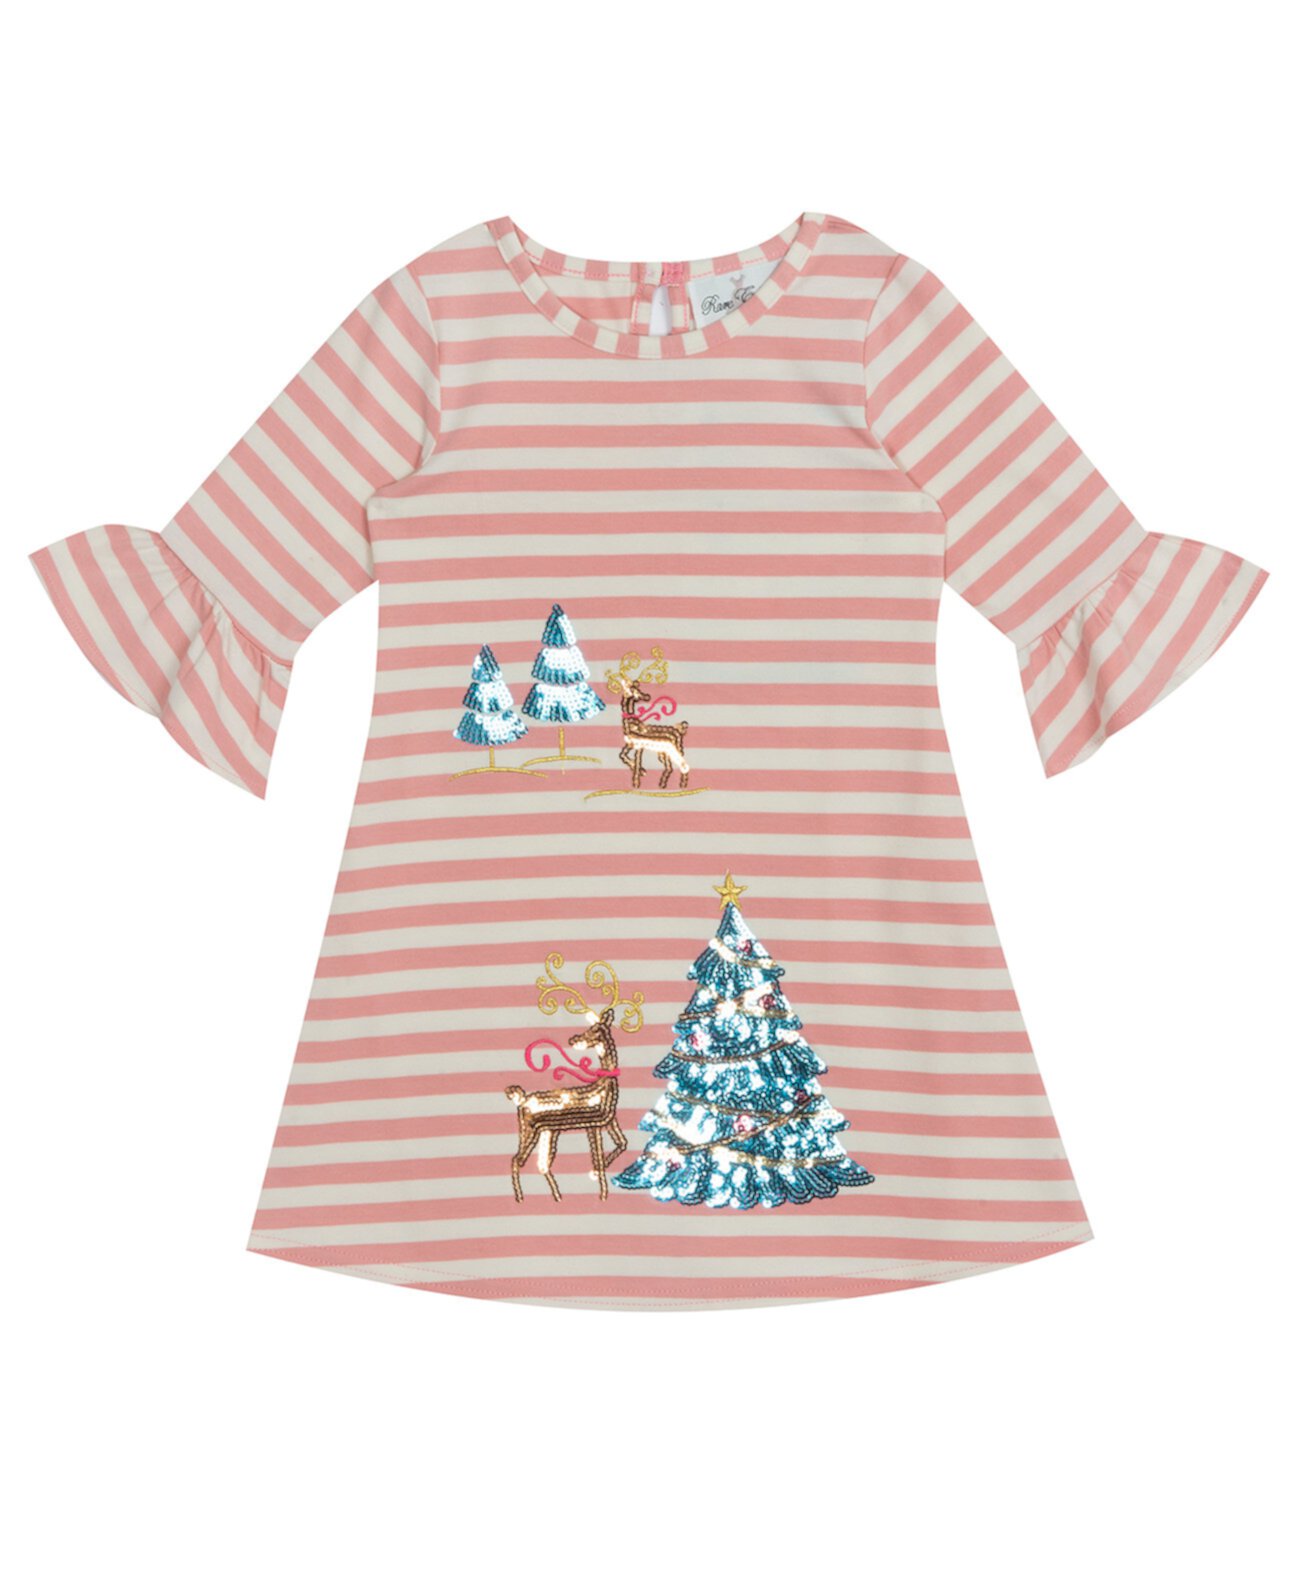 Трикотажное платье Little Girls в полоску с оленем и принтом Rare Editions